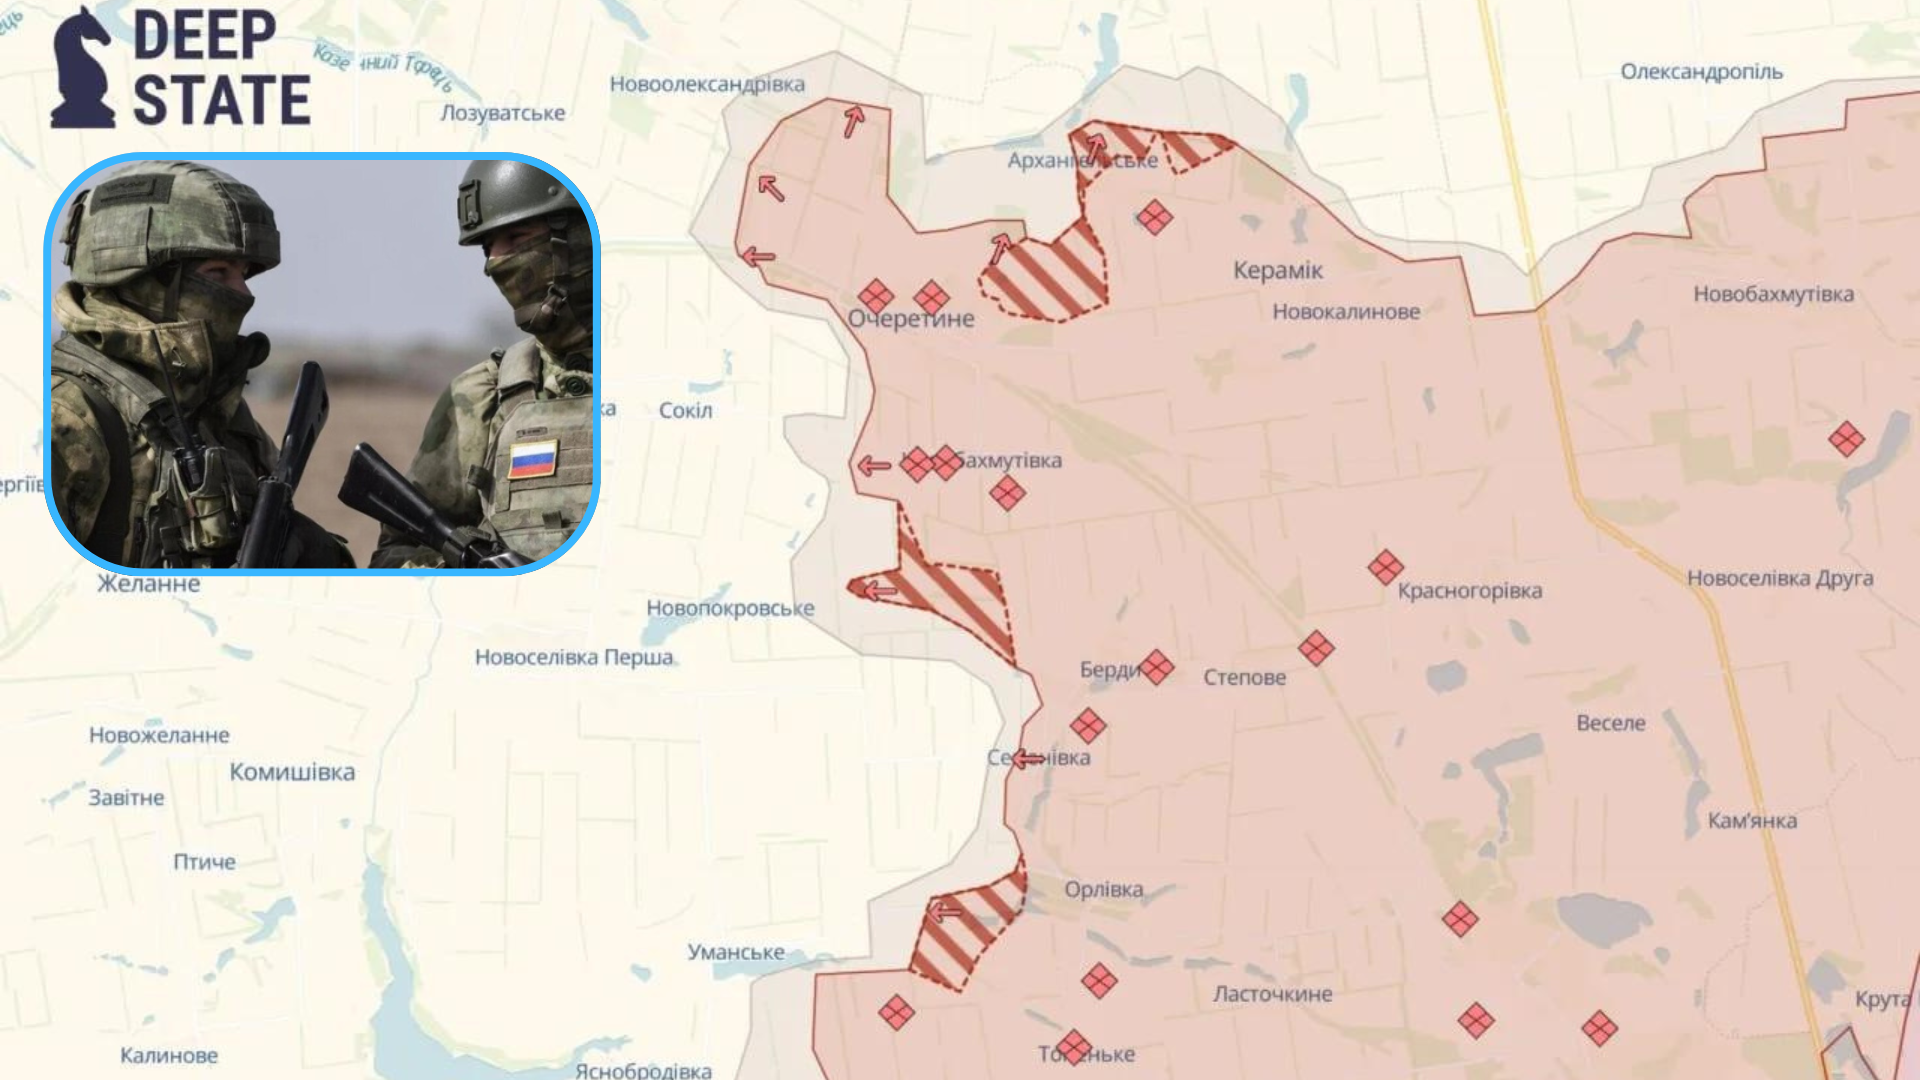 Российская армия вышла к административным границам Очеретина. Это уже второй населенный пункт в Донецкой области, который был оккупирован российской армией за минувшие сутки.